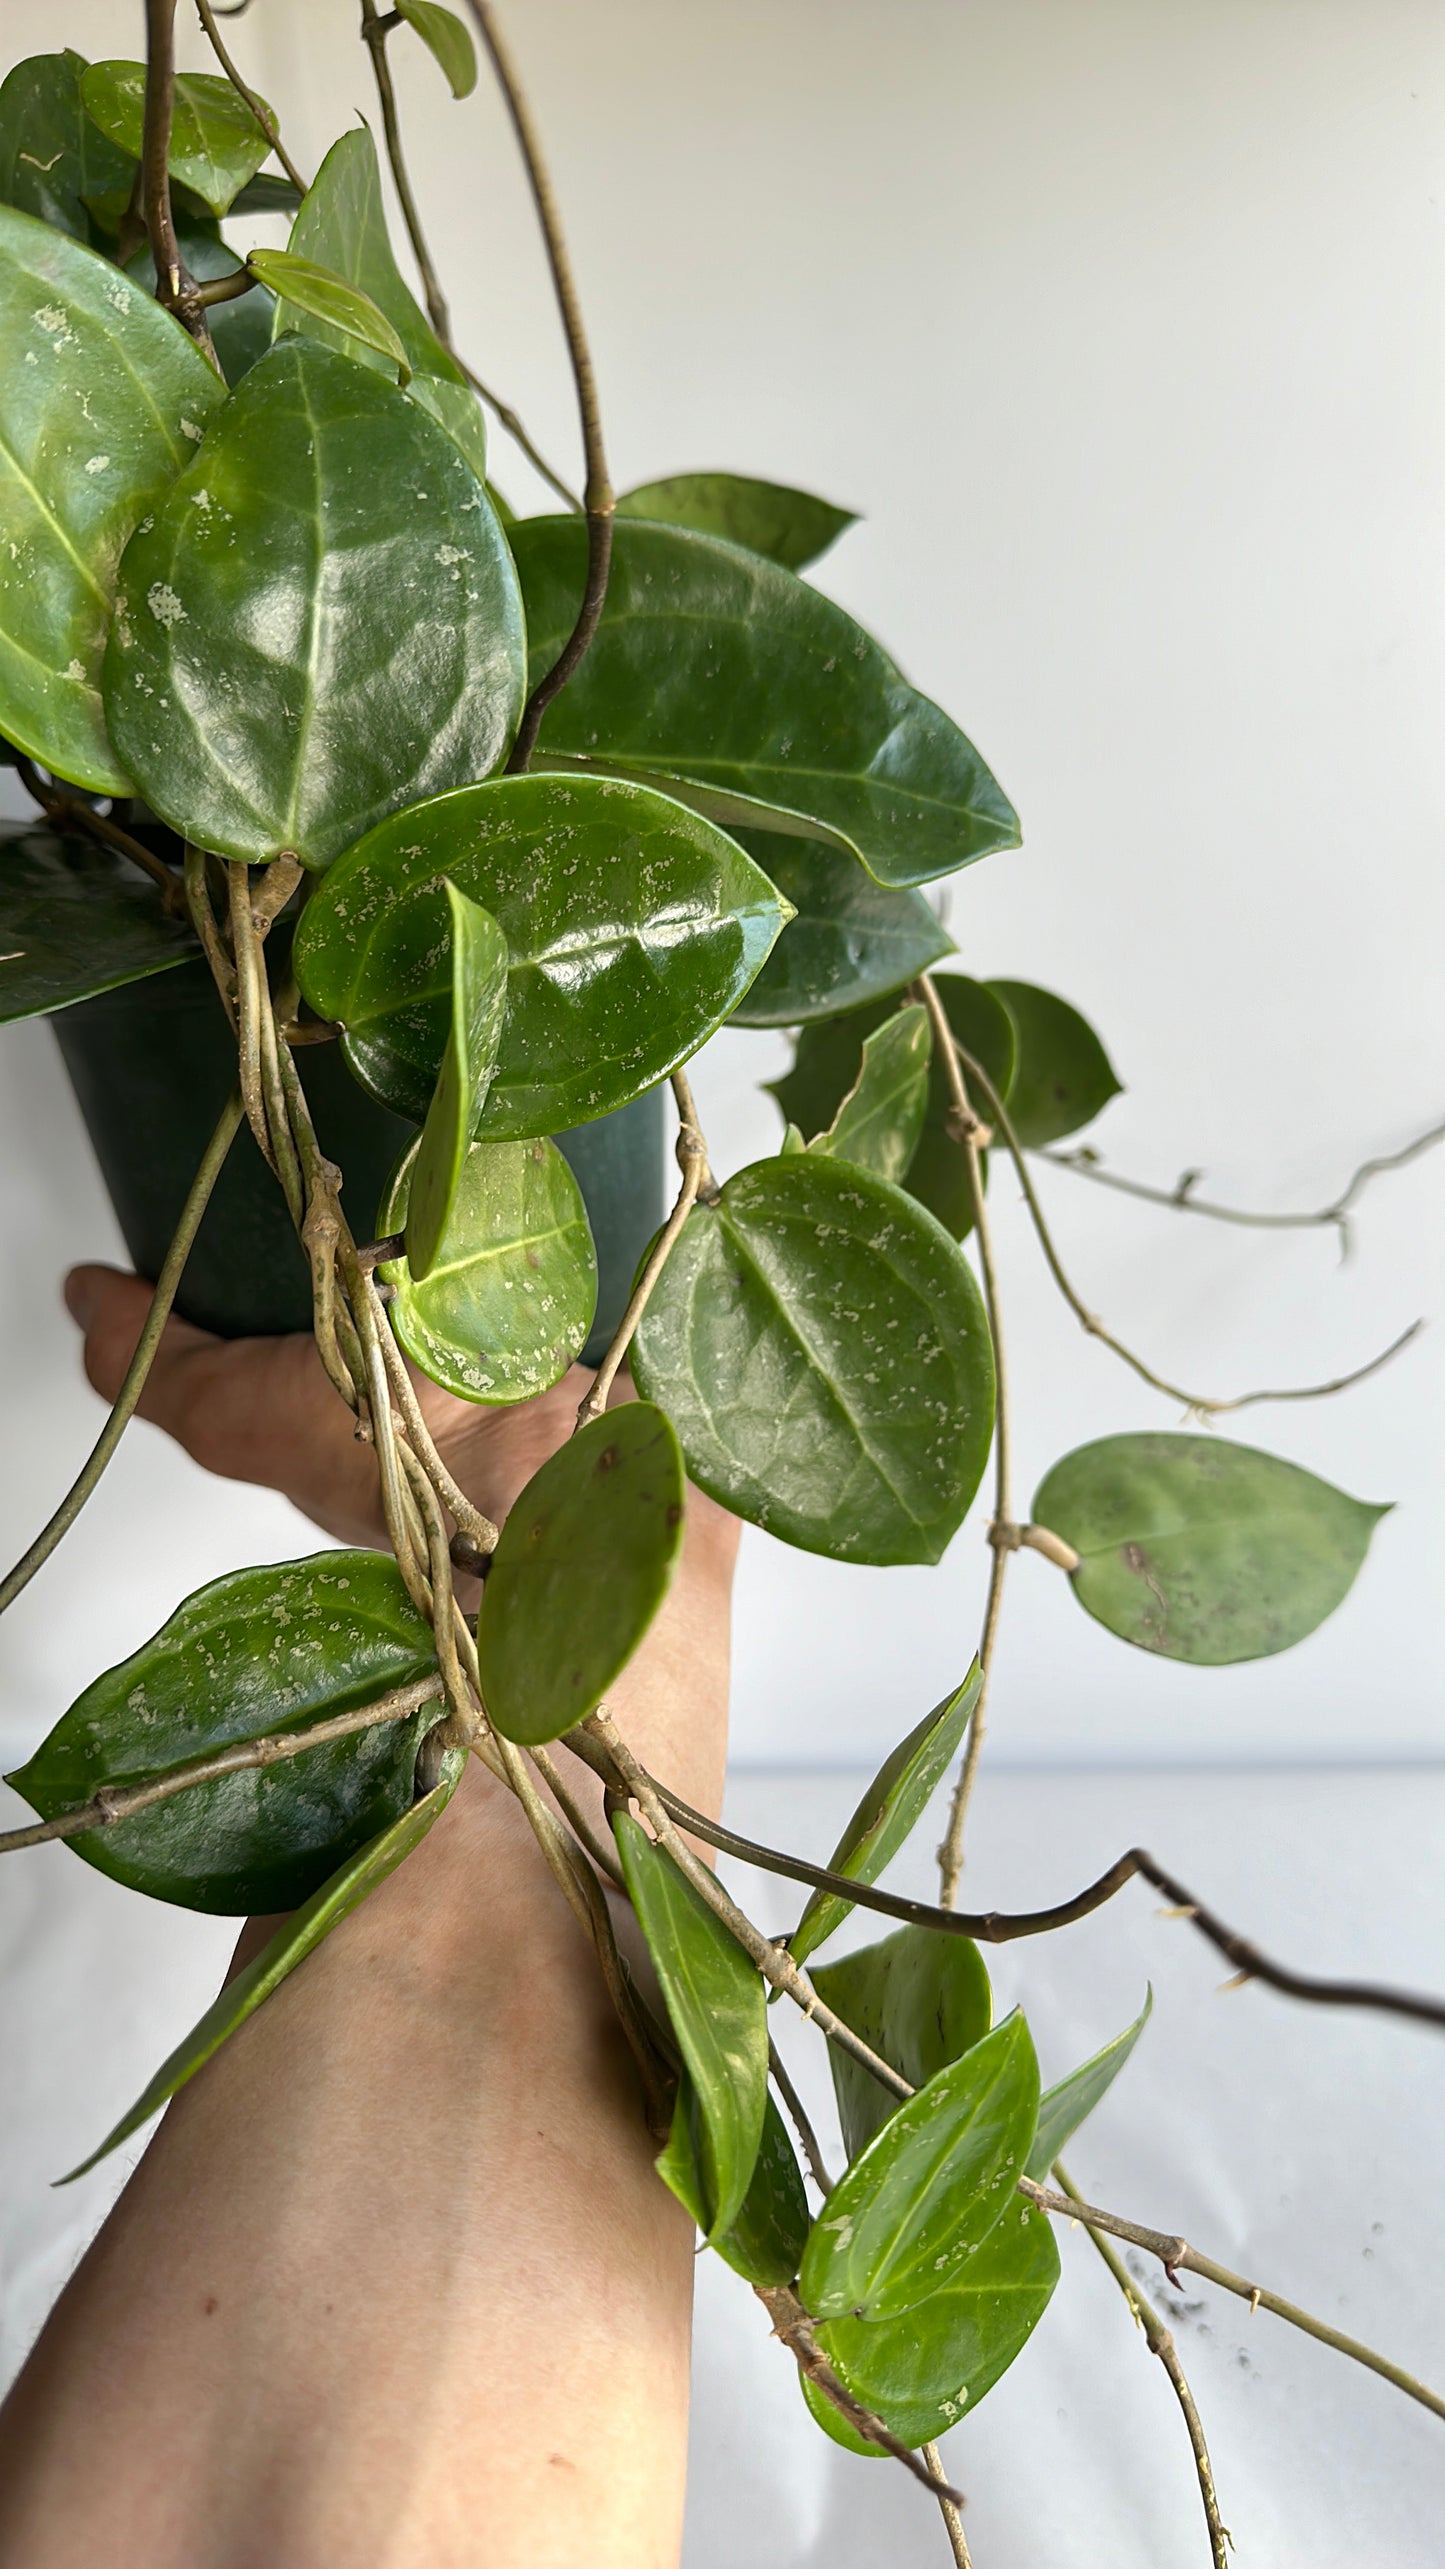 Hoya parasitica "Splash" 6" pet friendly plant | house plant | indoor plant